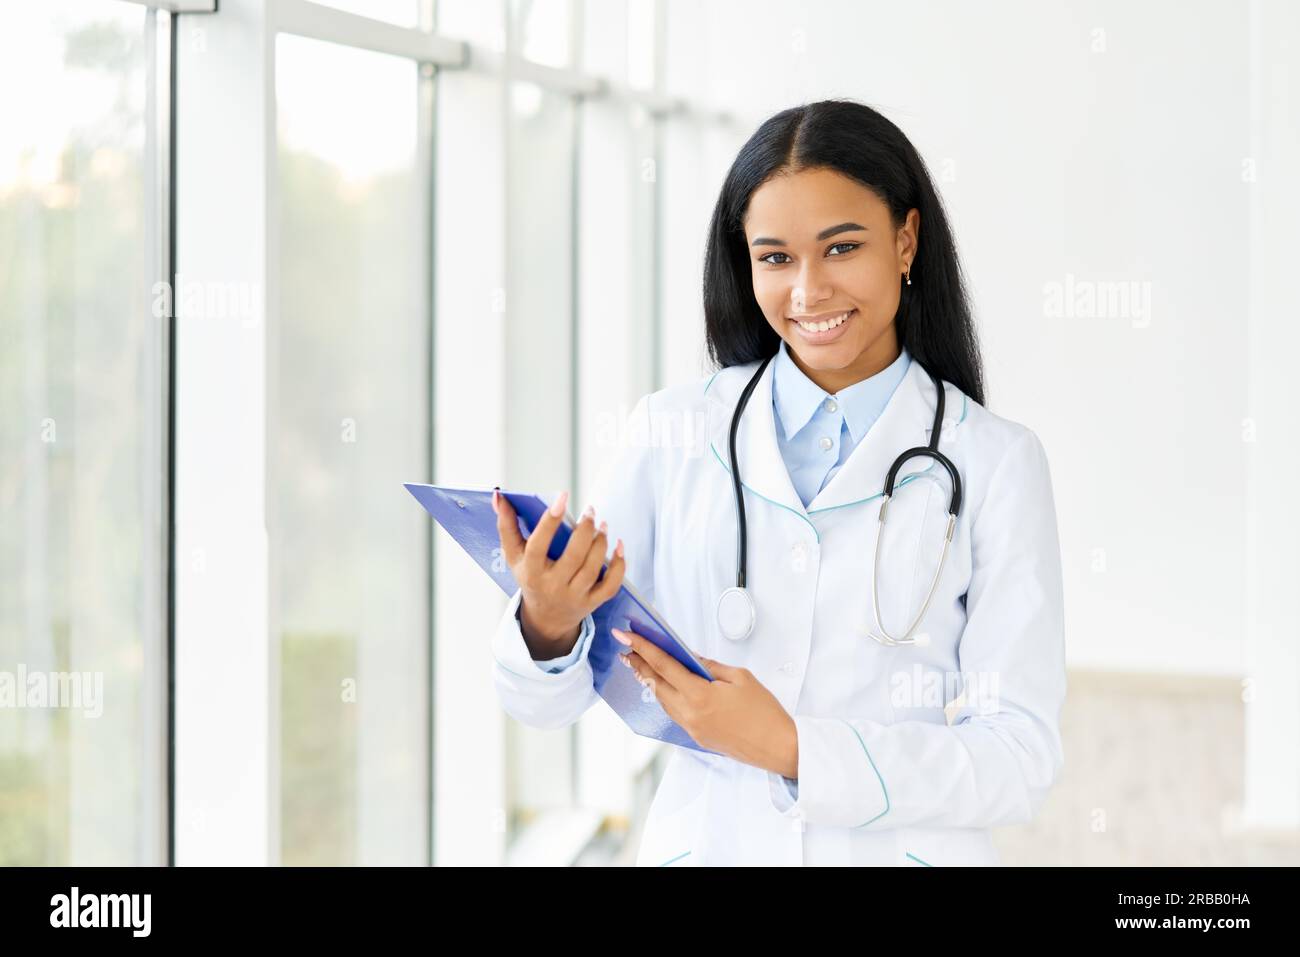 Glücklich lächelnd afroamerikanischen Arzt mit Zwischenablage im Krankenhaus. Medizin, Beruf und Gesundheitskonzept Stockfoto